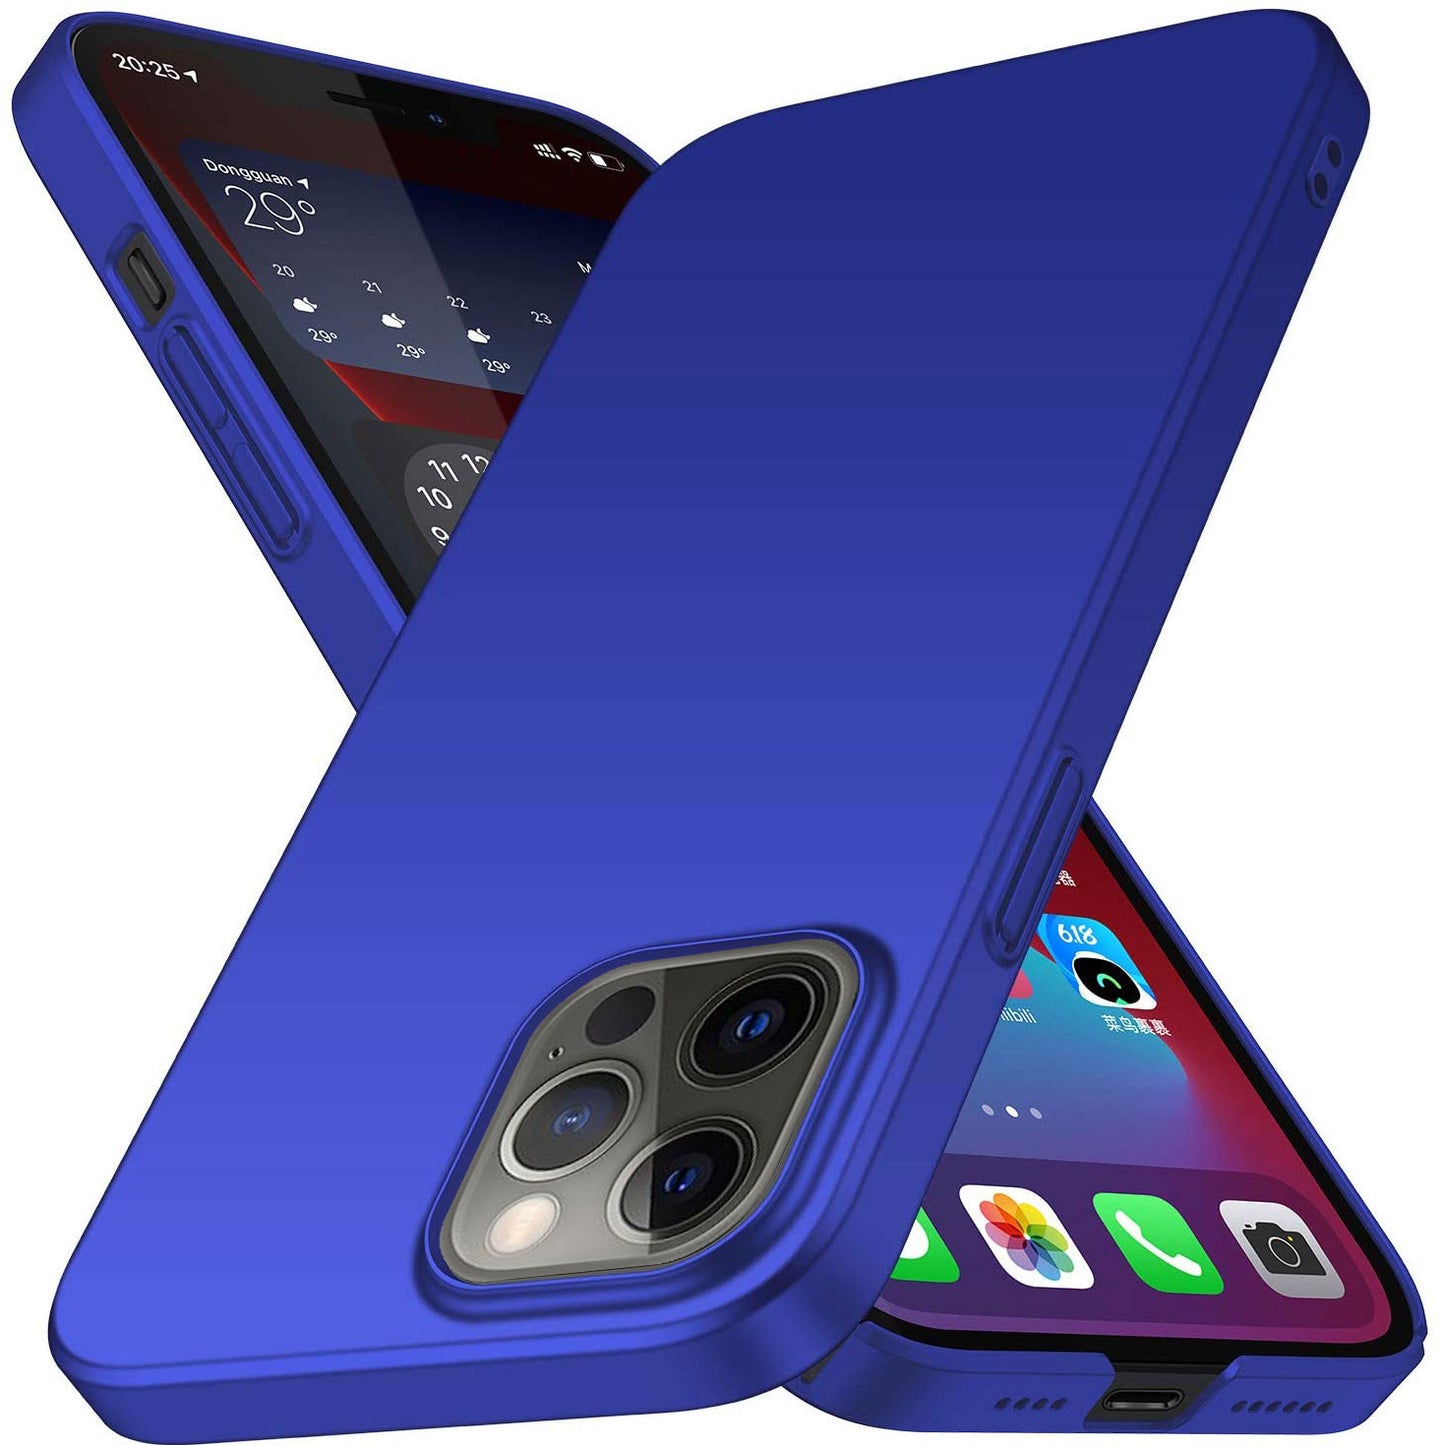 ArktisPRO iPhone 12 Pro Max Hülle UltraSlim Hardcase